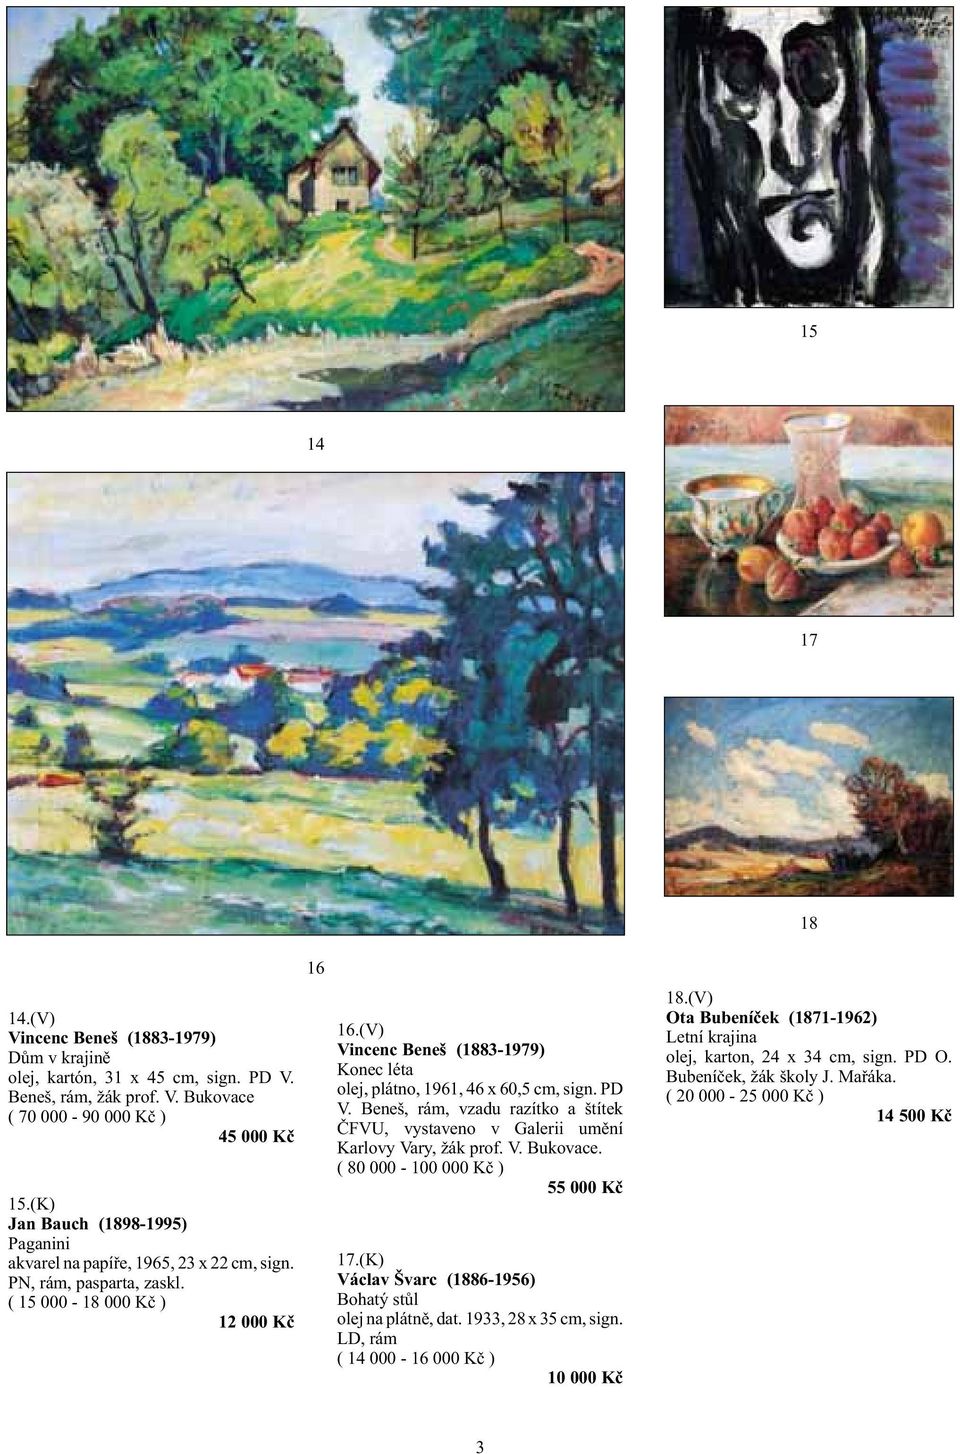 (V) Vincenc Beneš (1883-1979) Konec léta olej, plátno, 1961, 46 x 60,5 cm, sign. PD V. Beneš, rám, vzadu razítko a štítek ČFVU, vystaveno v Galerii umění Karlovy Vary, žák prof. V. Bukovace.